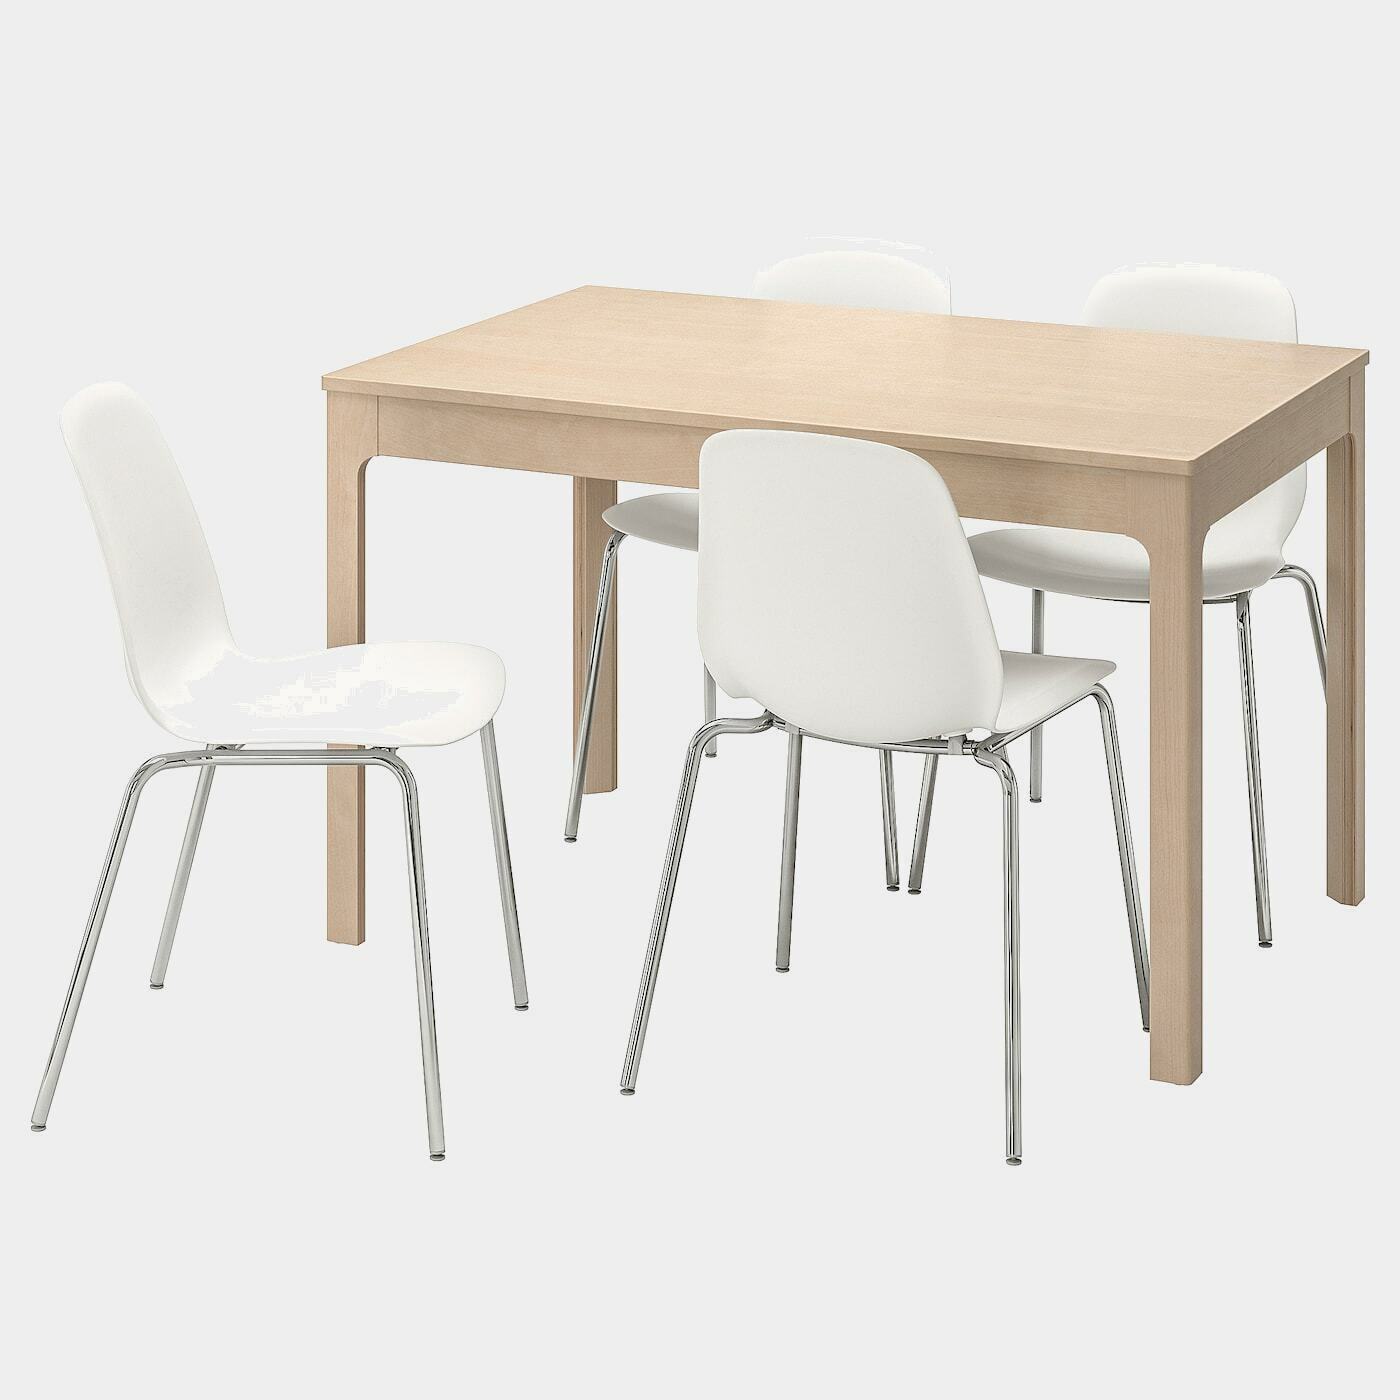 EKEDALEN / LEIFARNE Tisch und 4 Stühle  - Essplatzgruppe - Möbel Ideen für dein Zuhause von Home Trends. Möbel Trends von Social Media Influencer für dein Skandi Zuhause.